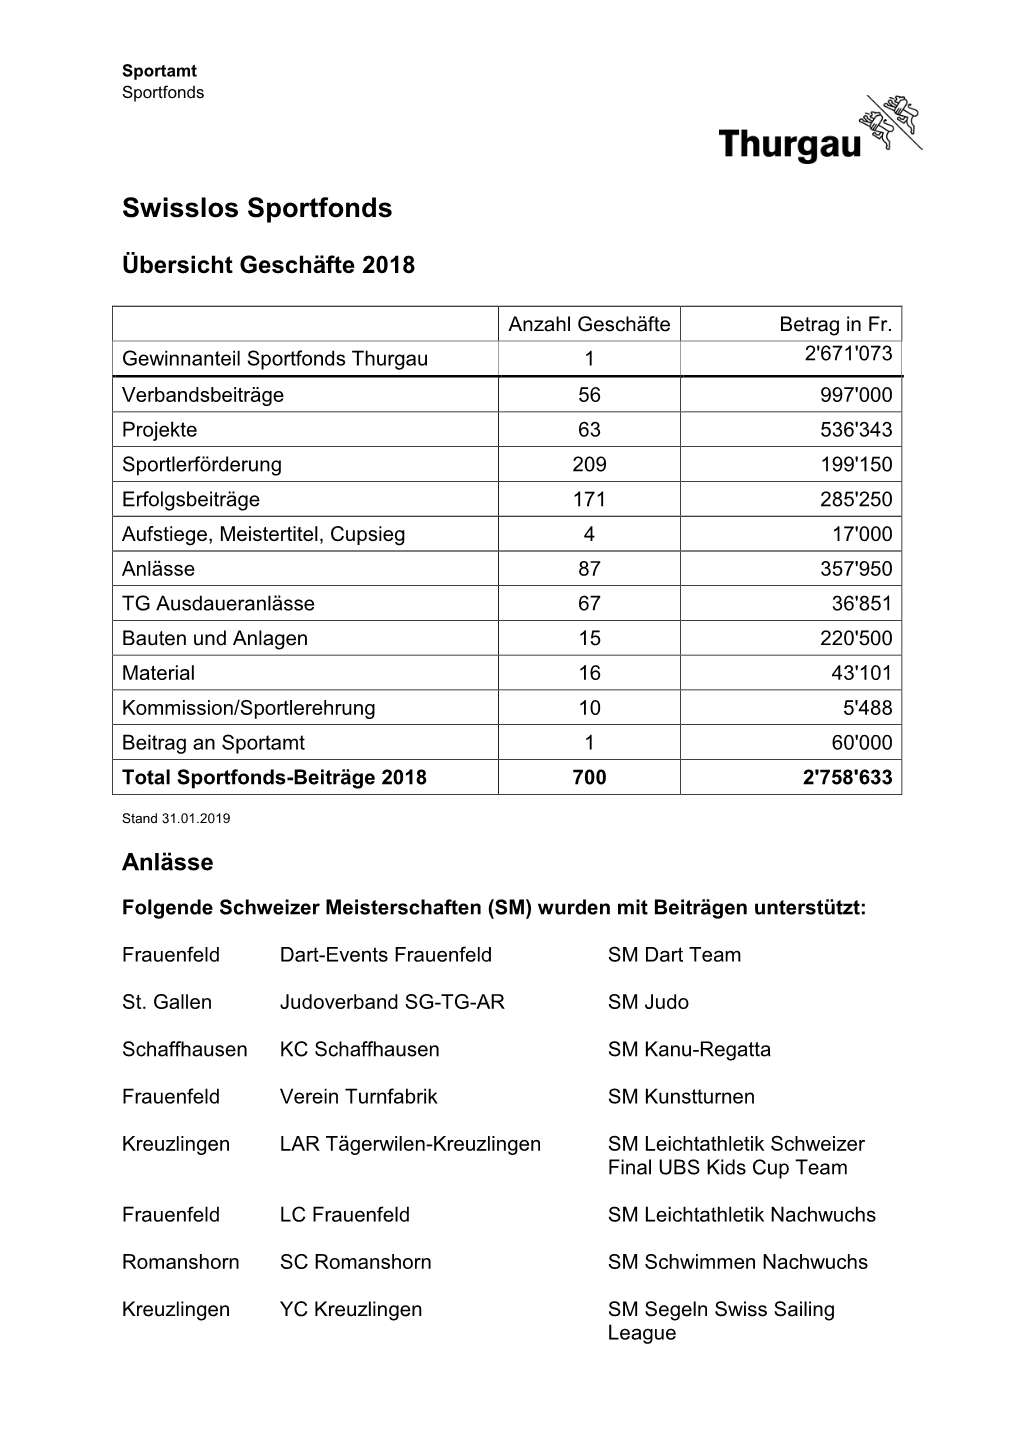 Statistik Swisslos Sportfonds 2018